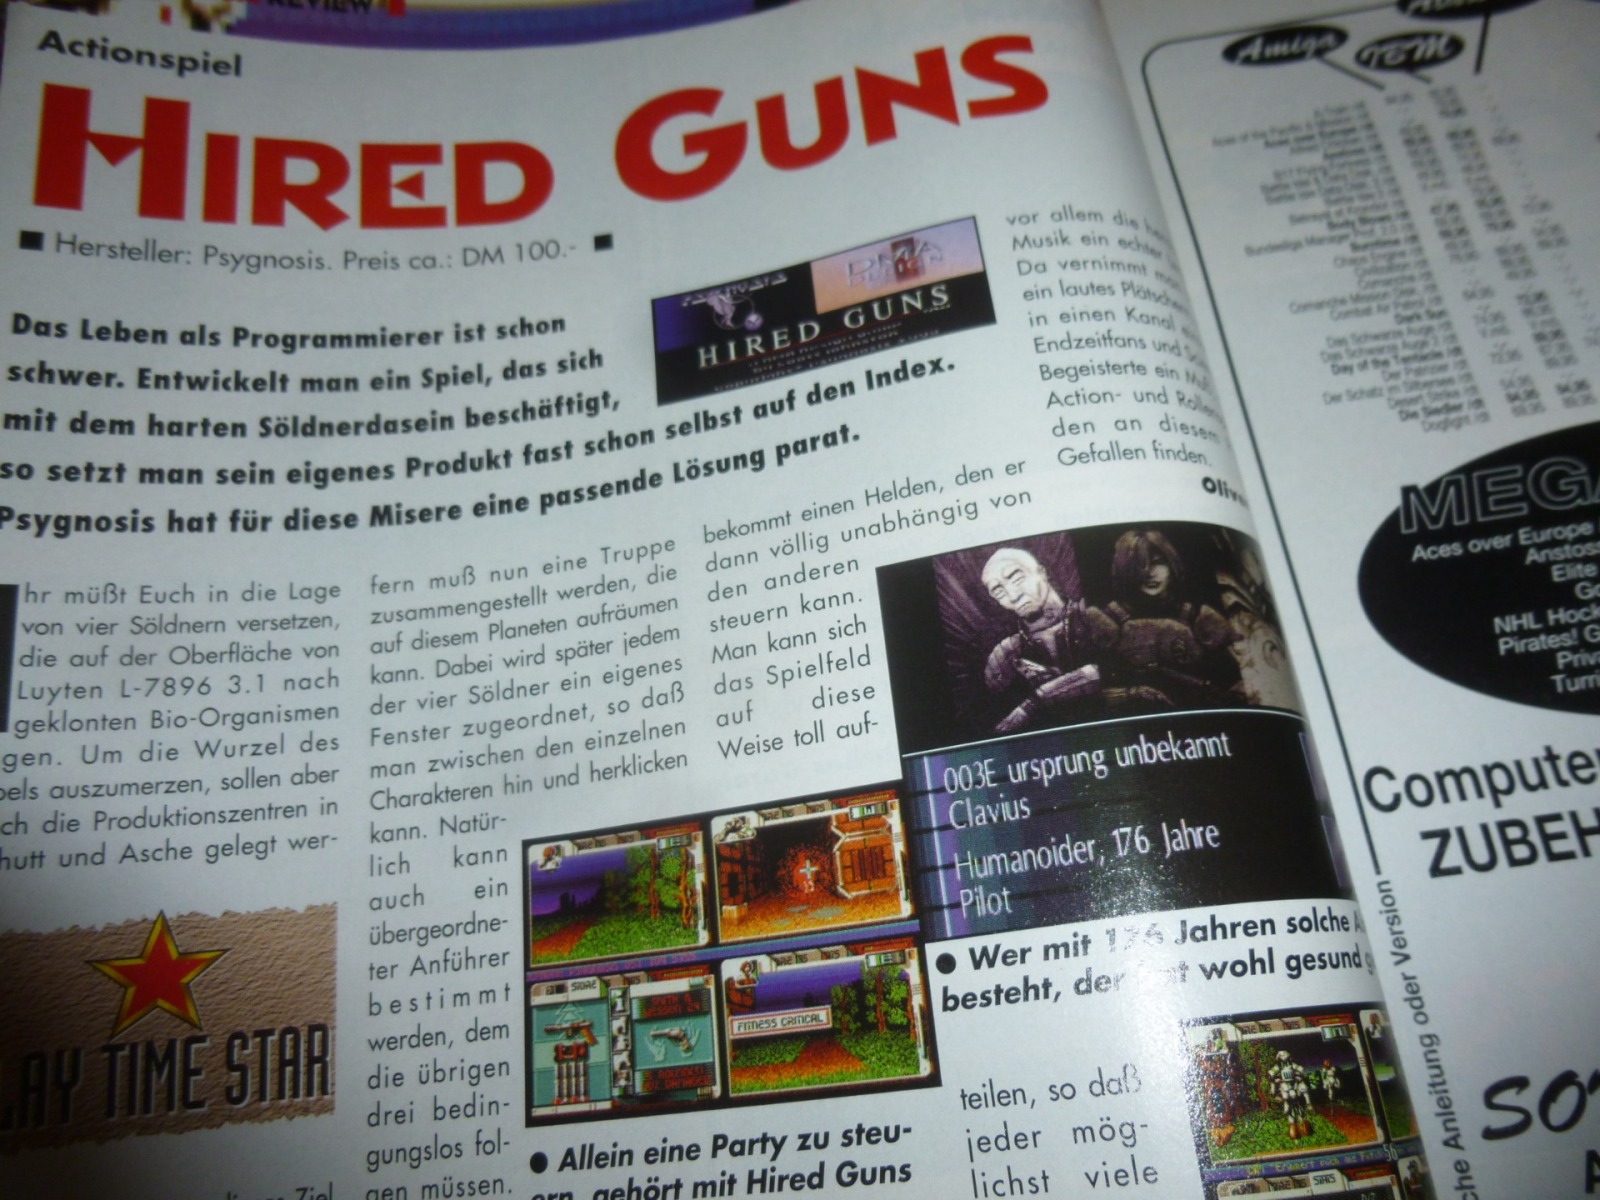 Play Time - Das Computer- und Videospiele-Magazin - Ausgabe 12/93 1993 14